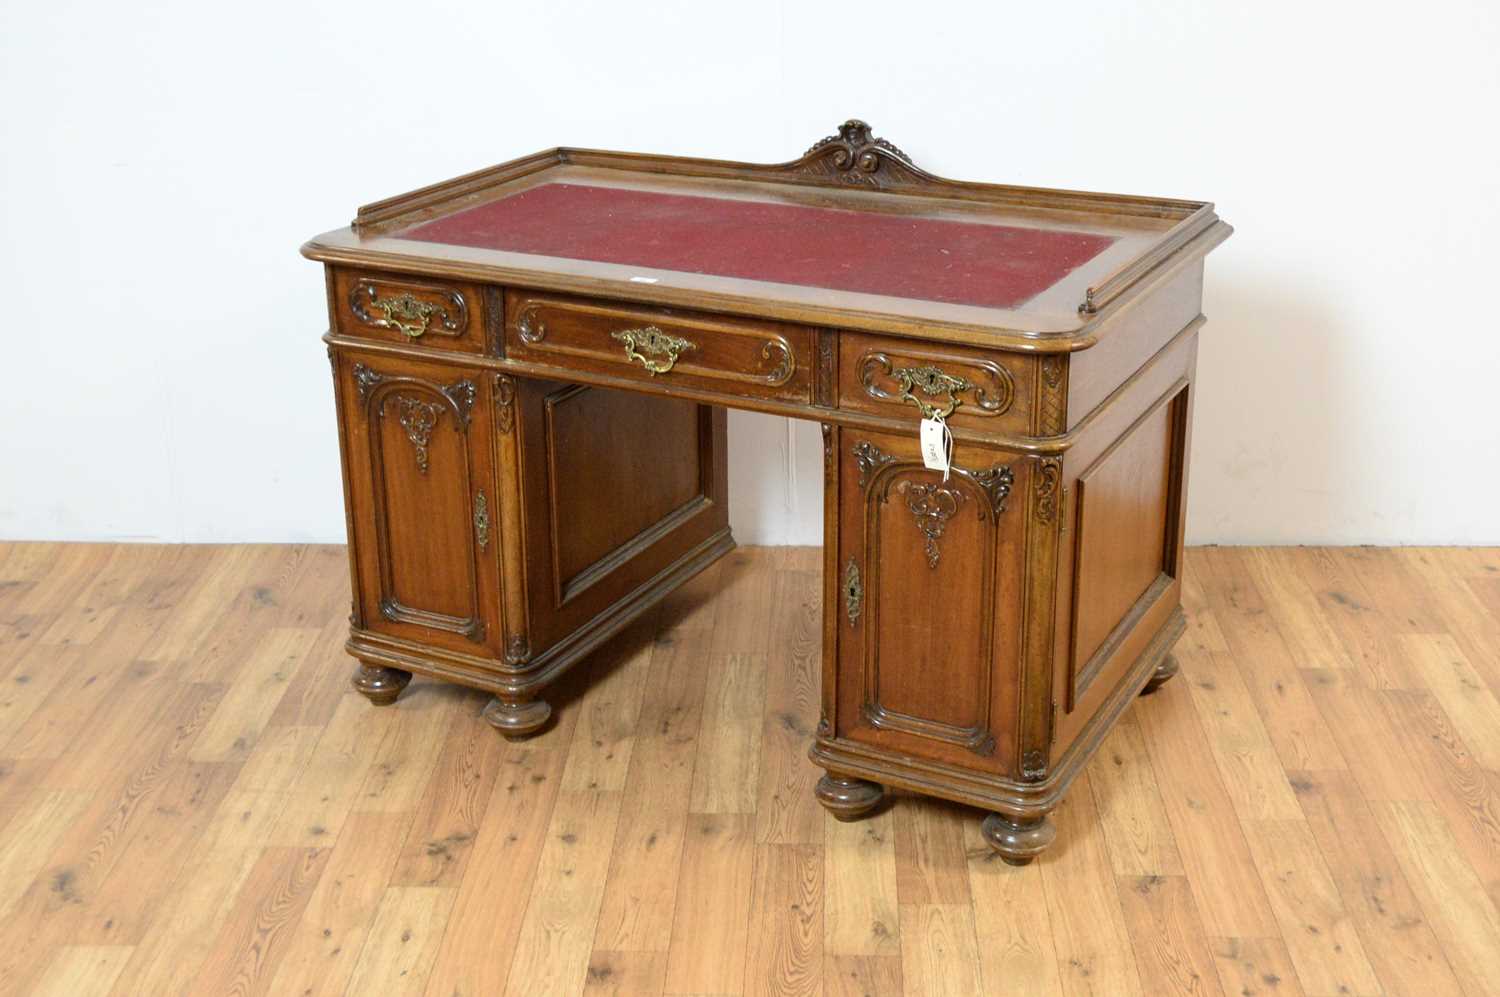 Lot 39 - An early 20th Century oak kneehole desk